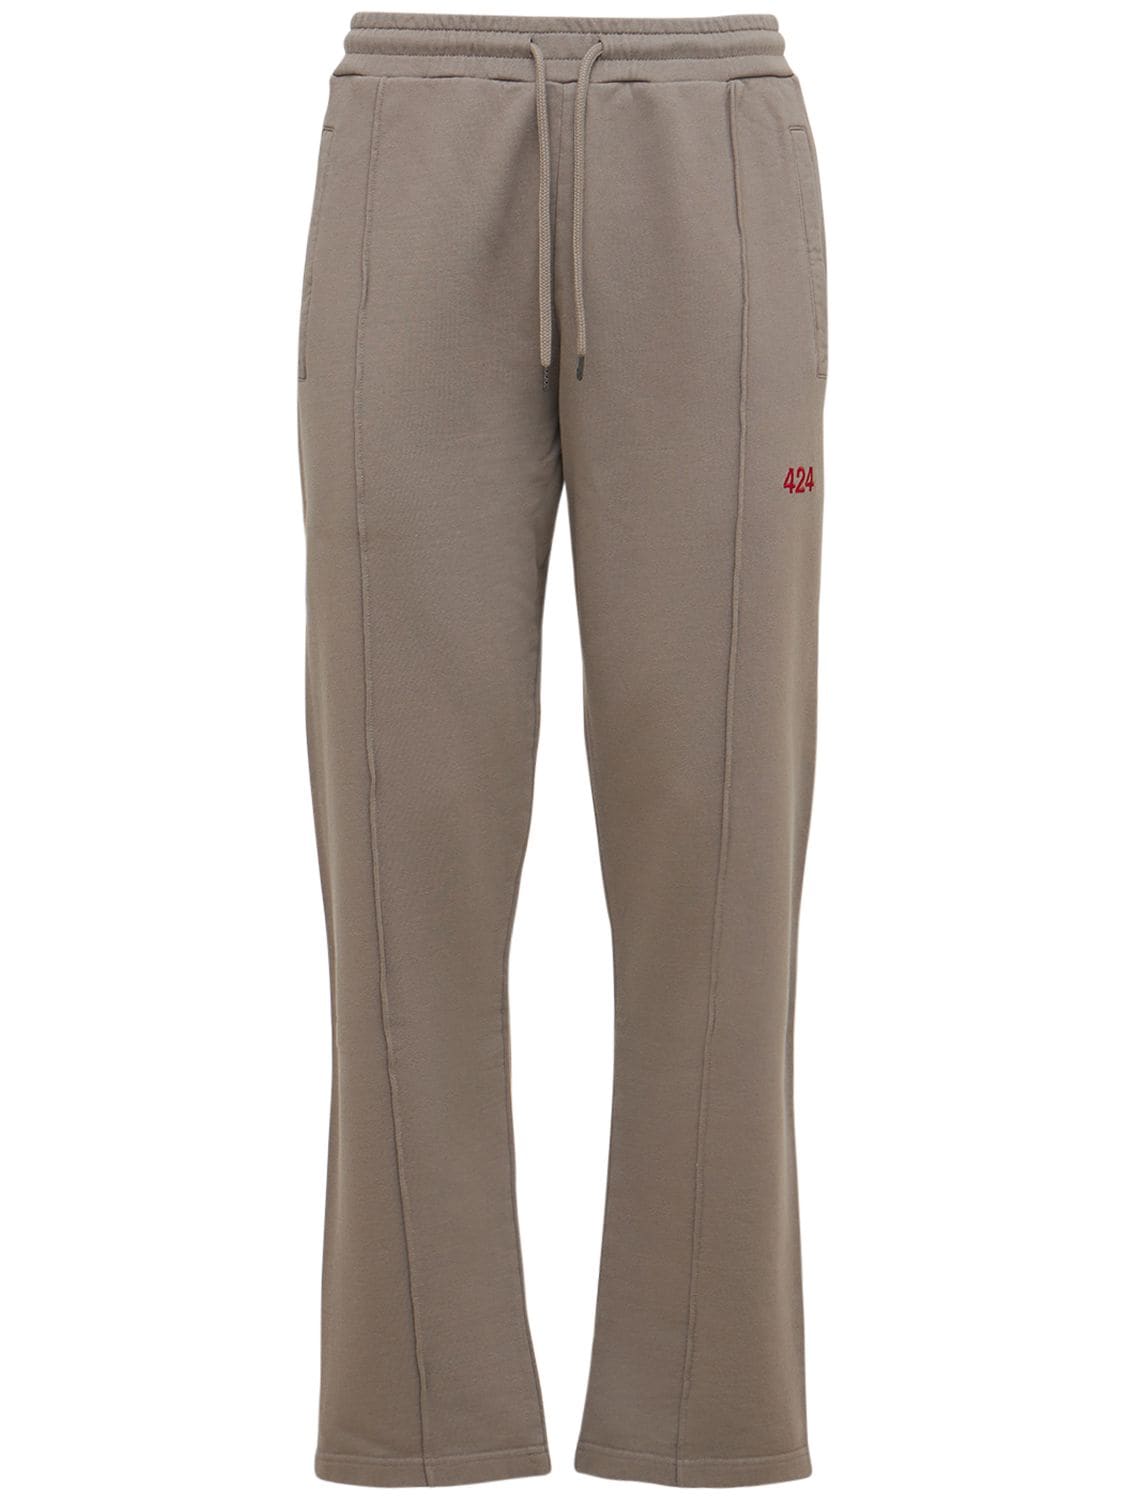 Pantaloni In Felpa Di Cotone Con Logo - 424 - Modalova